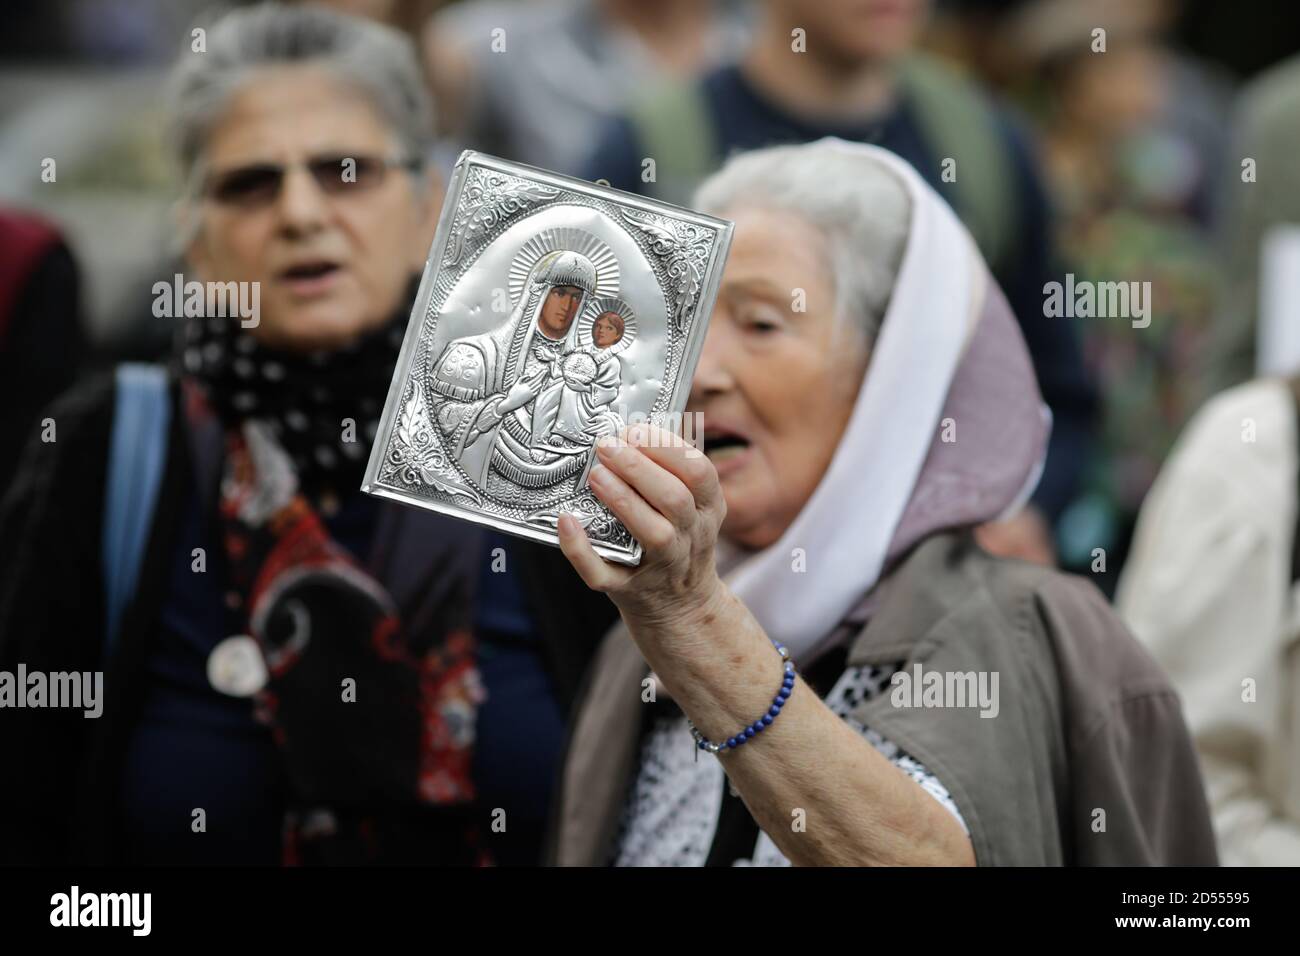 Bucarest, Romania - 10 ottobre 2020: Dettagli con una donna anziana che detiene un'icona della Chiesa ortodossa durante un raduno politico. Foto Stock